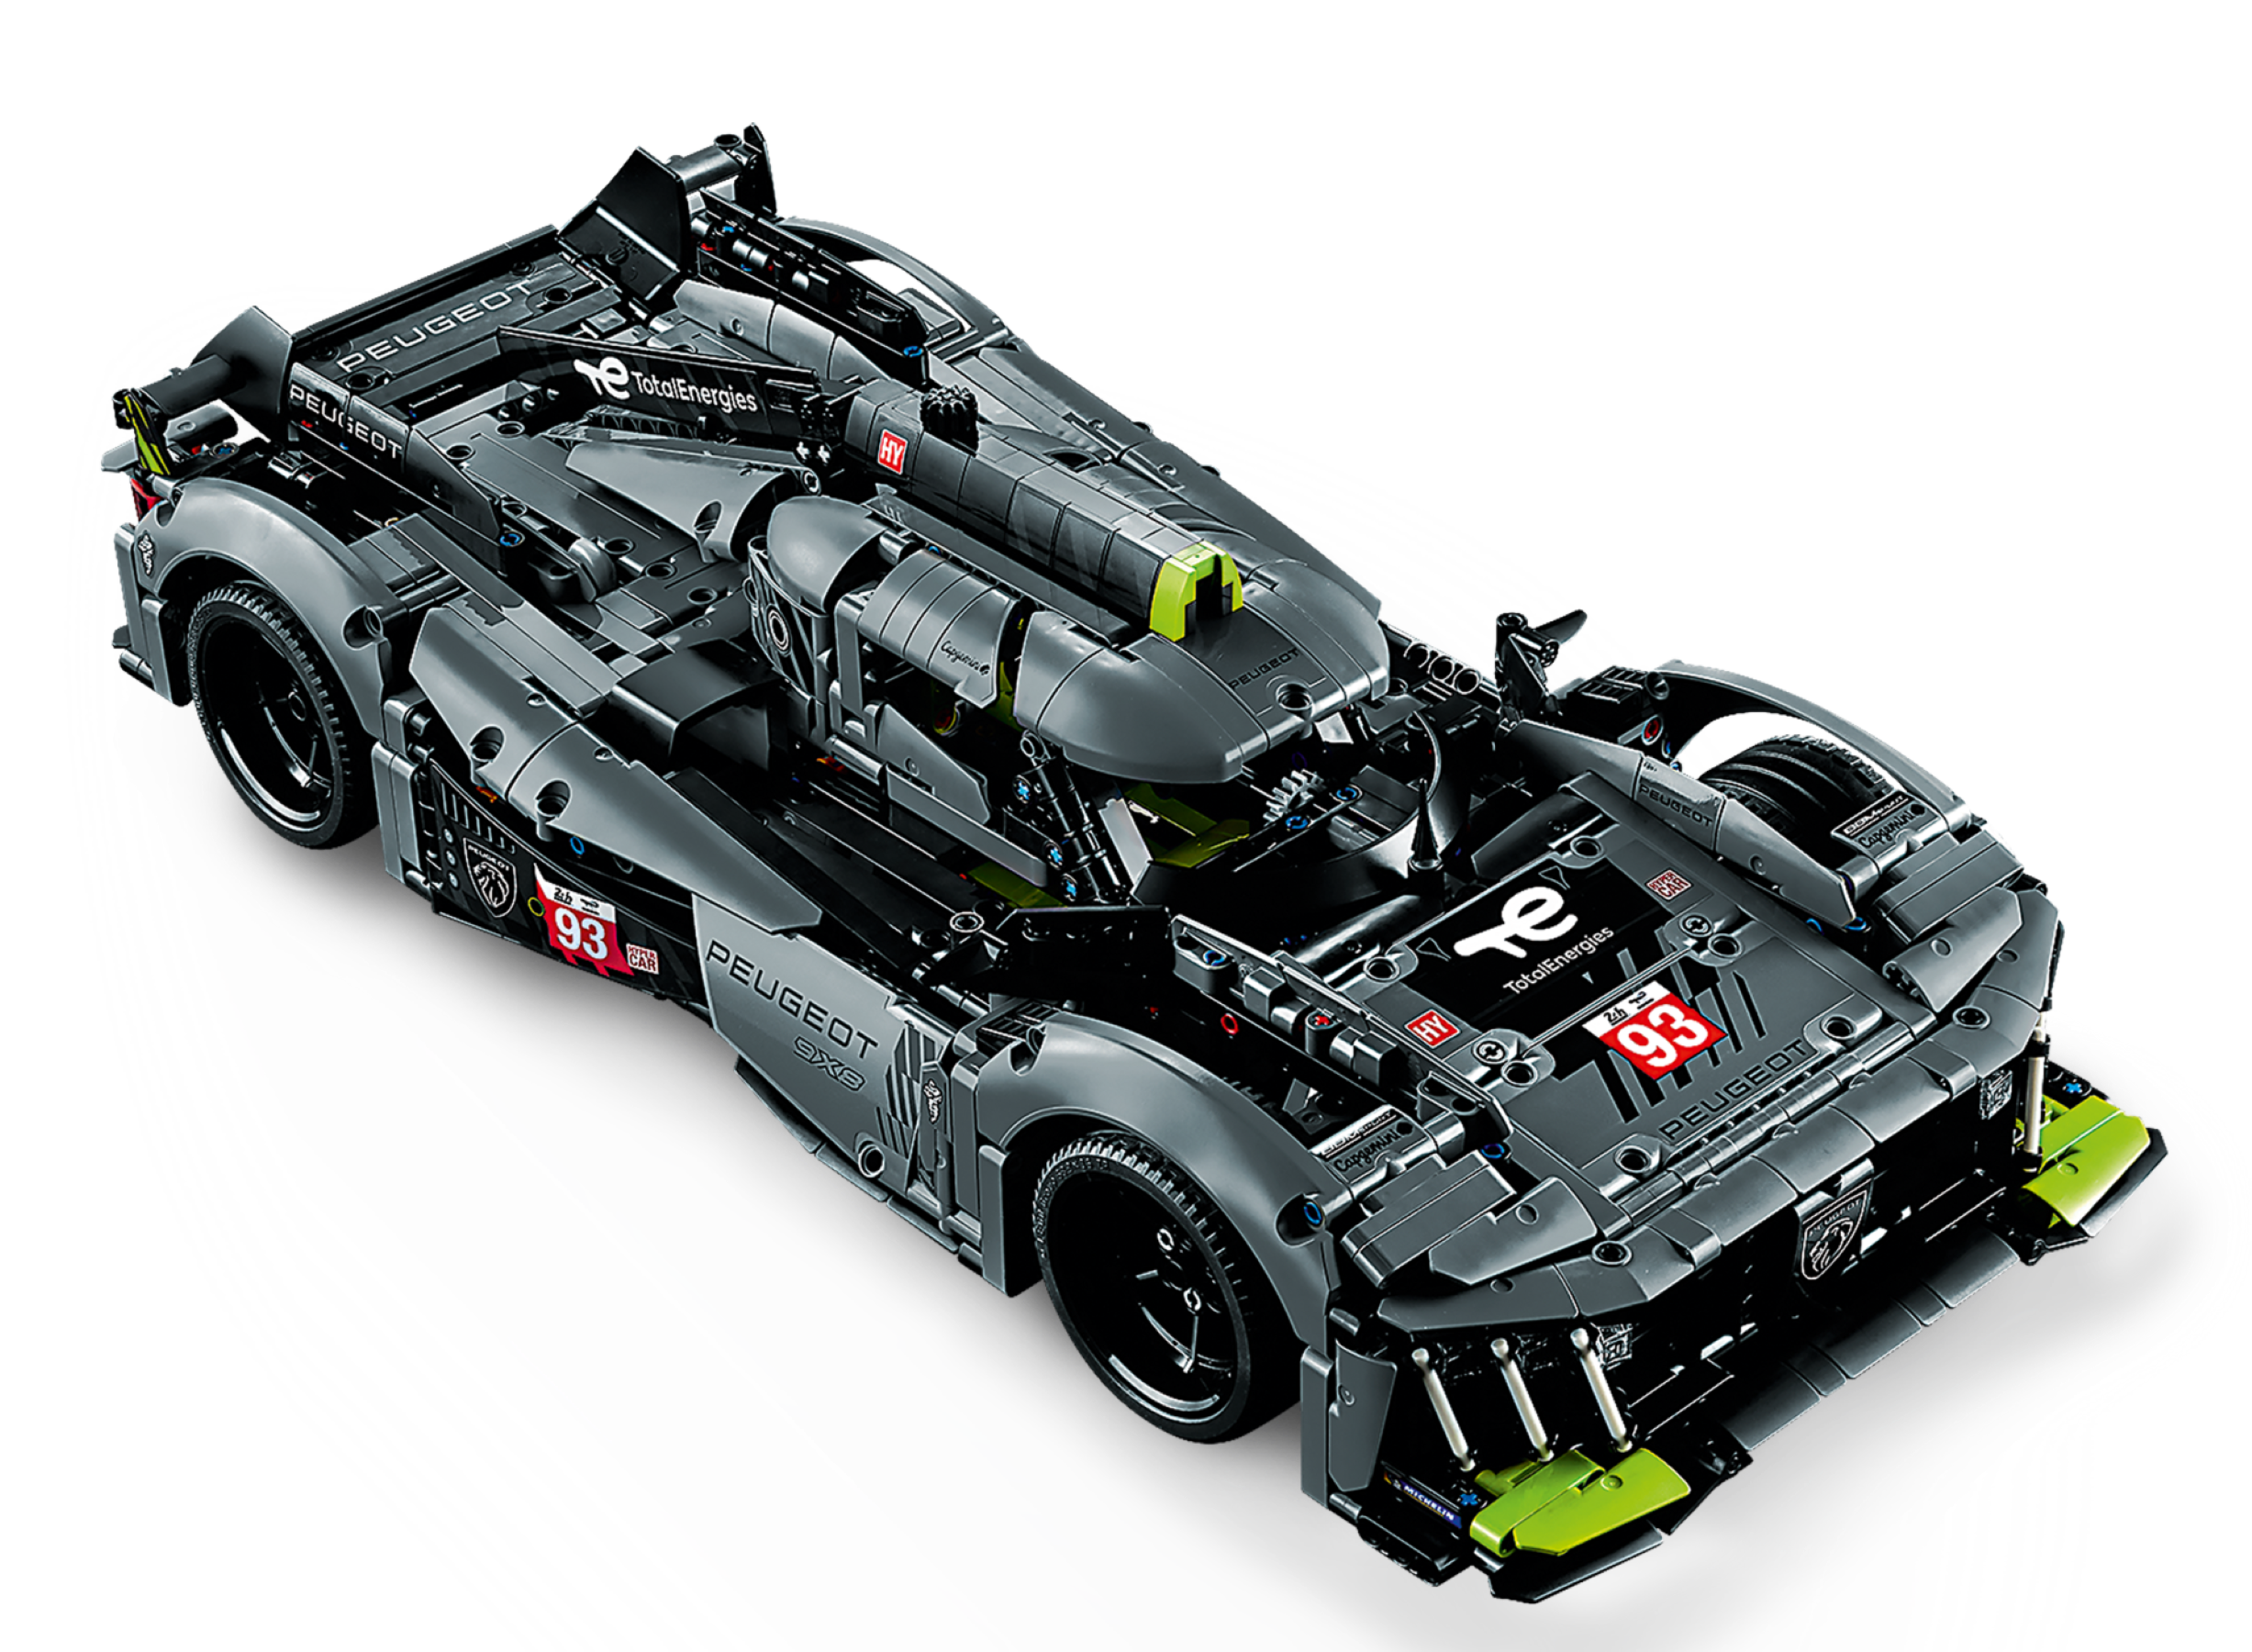 SOLDES. 30€ de réduction sur la Peugeot 9x8 LEGO des 24h du Mans